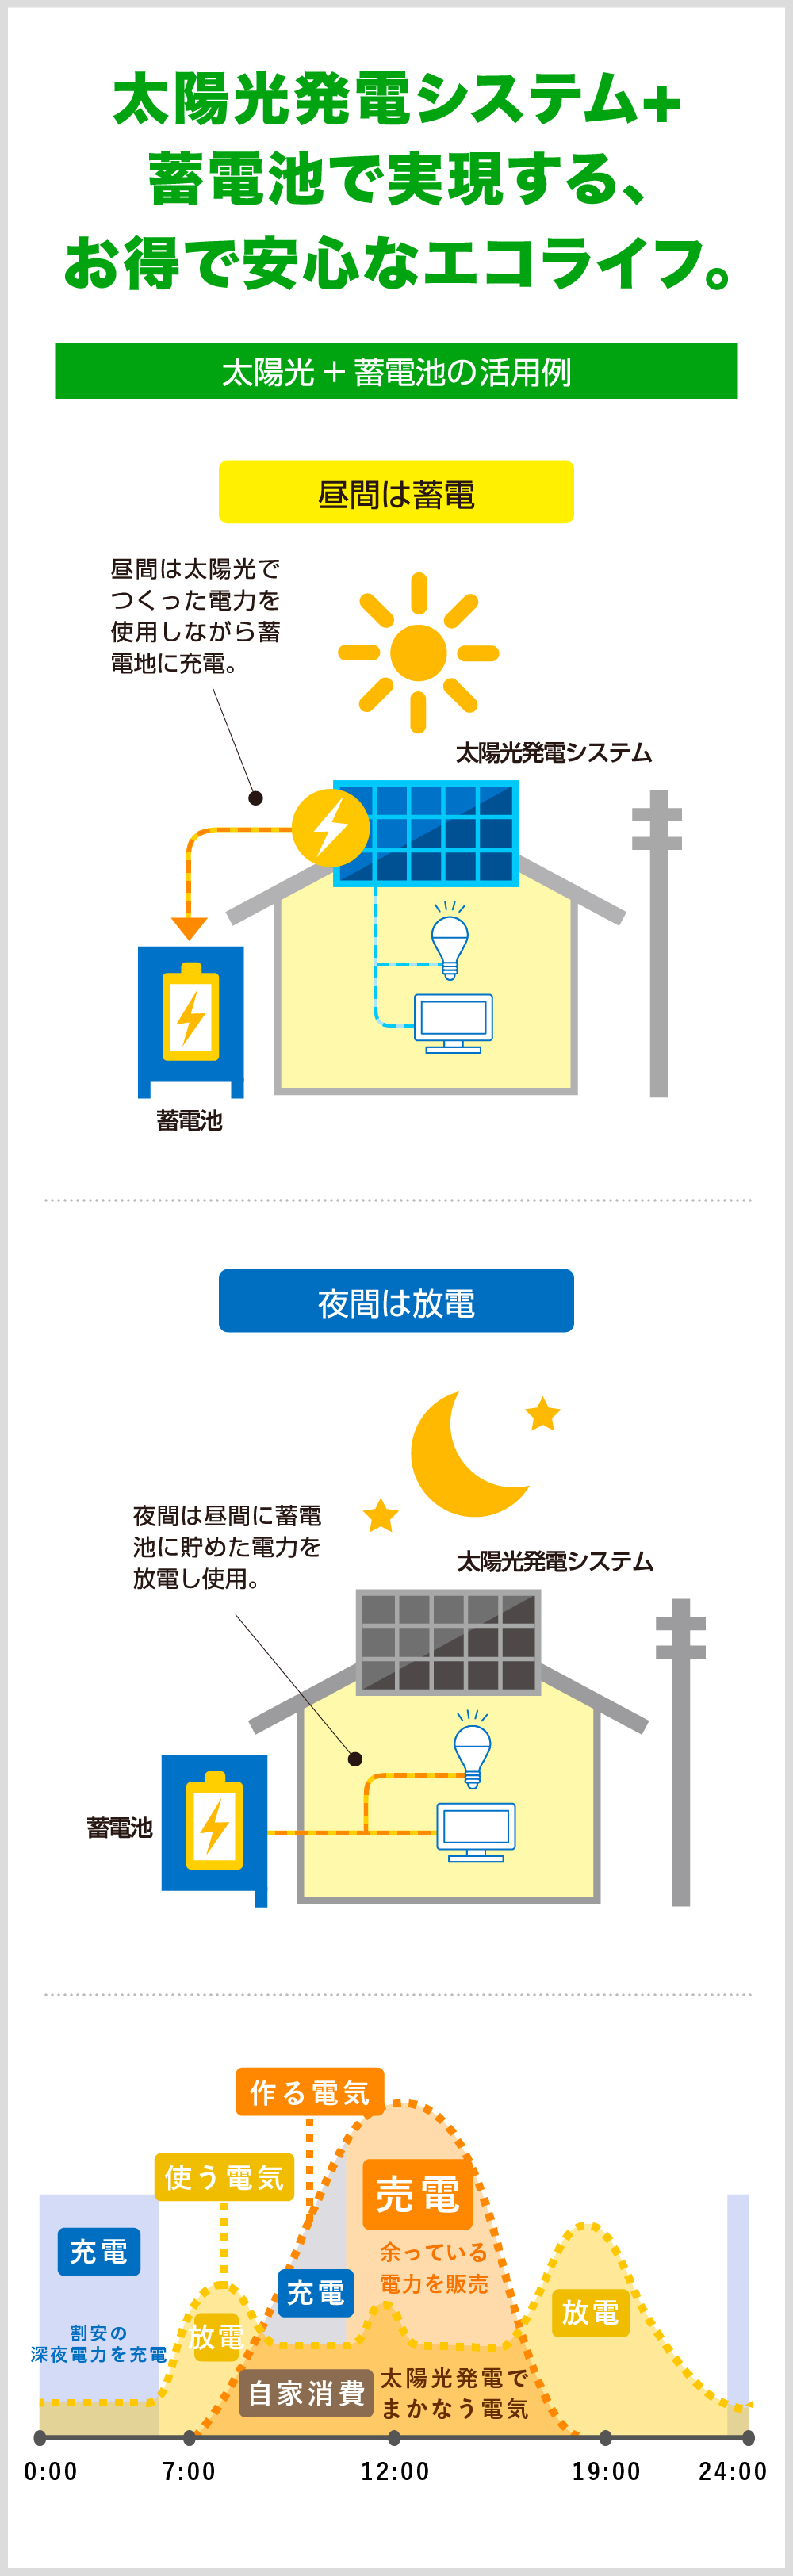 太陽光発電システム+蓄電池で実現するお得で安心エコライフ